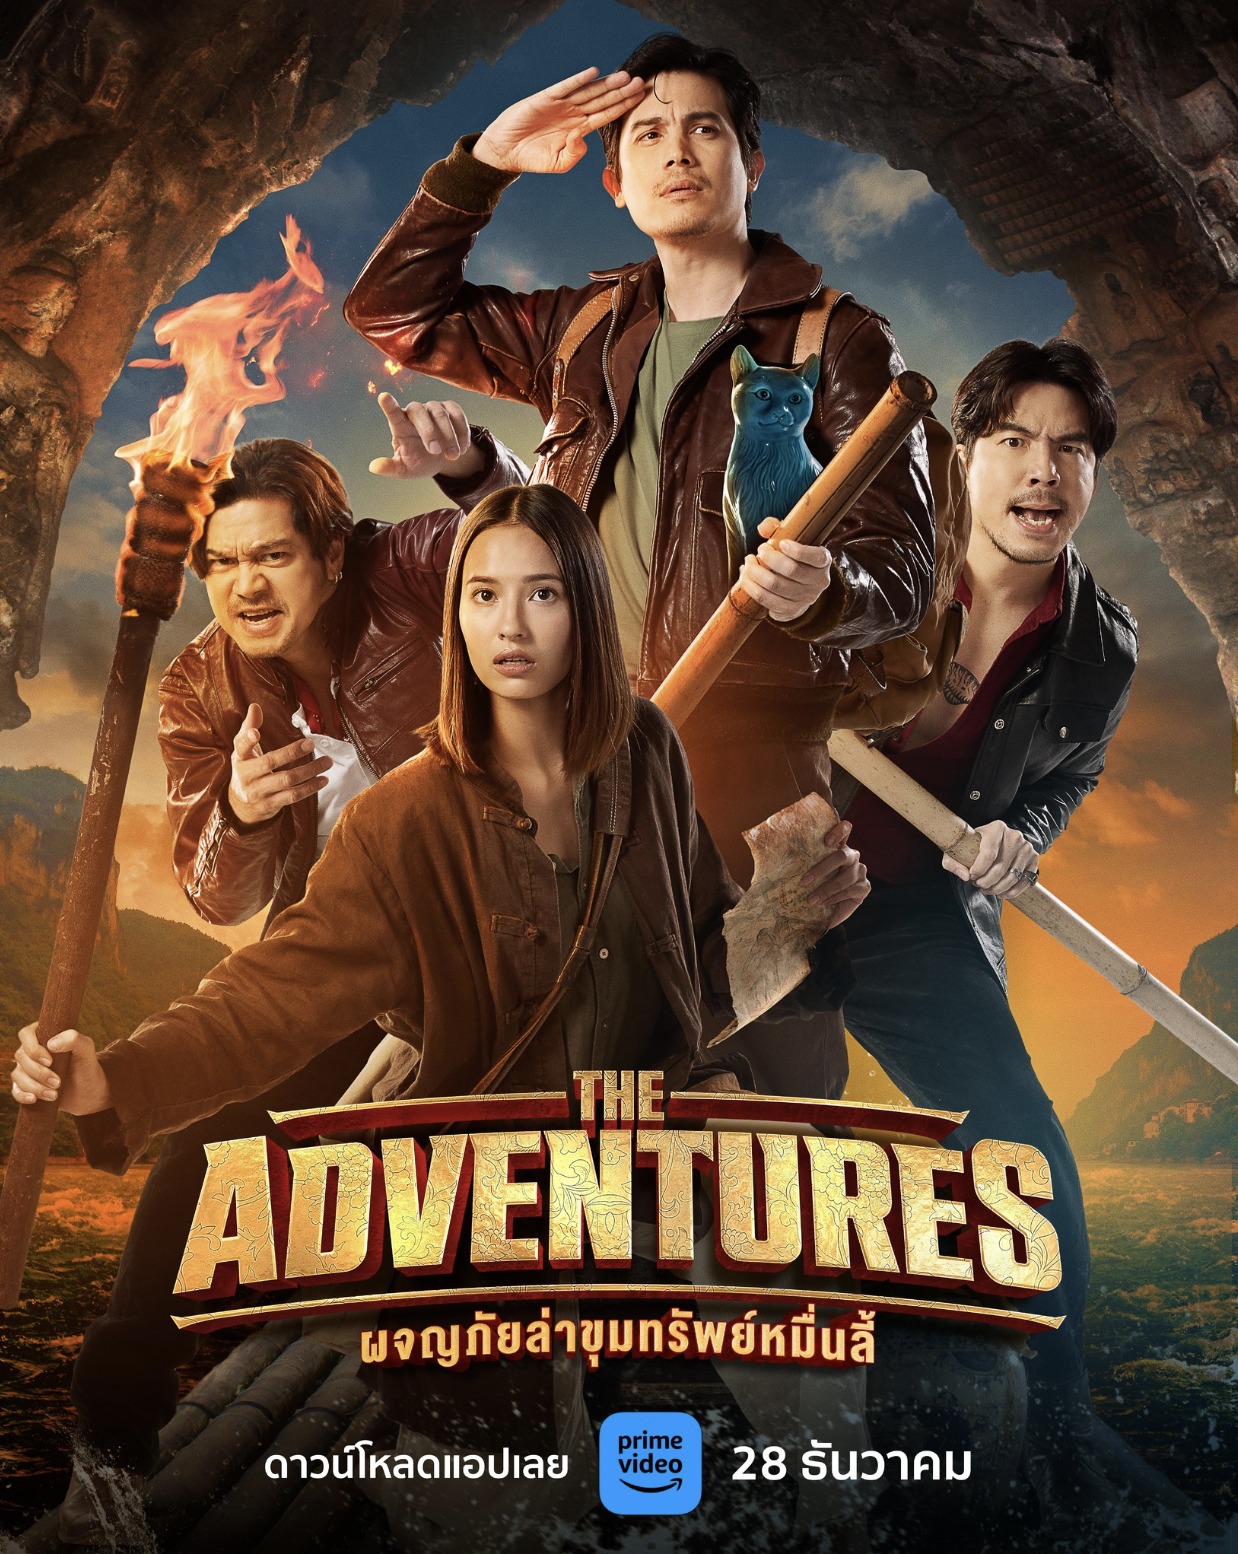 ดูหนังออนไลน์พากย์ไทย The Adventures 2023 ผจญภัยล่าขุมทรัพย์หมื่นลี้ nunghdmai